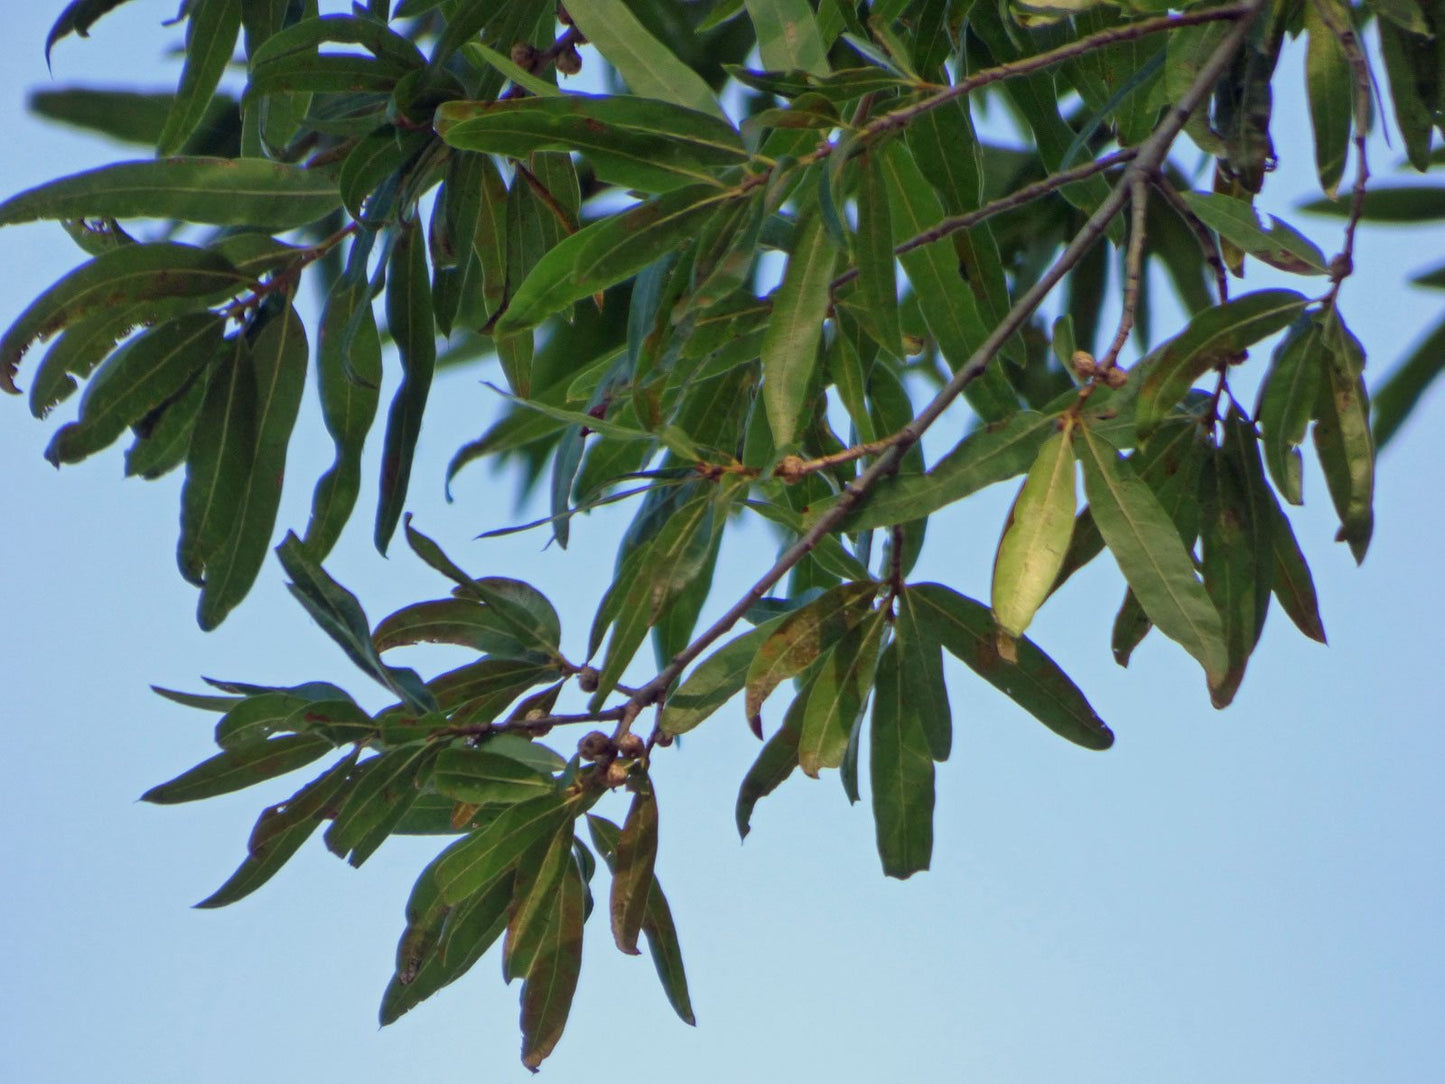 willow oak leaves